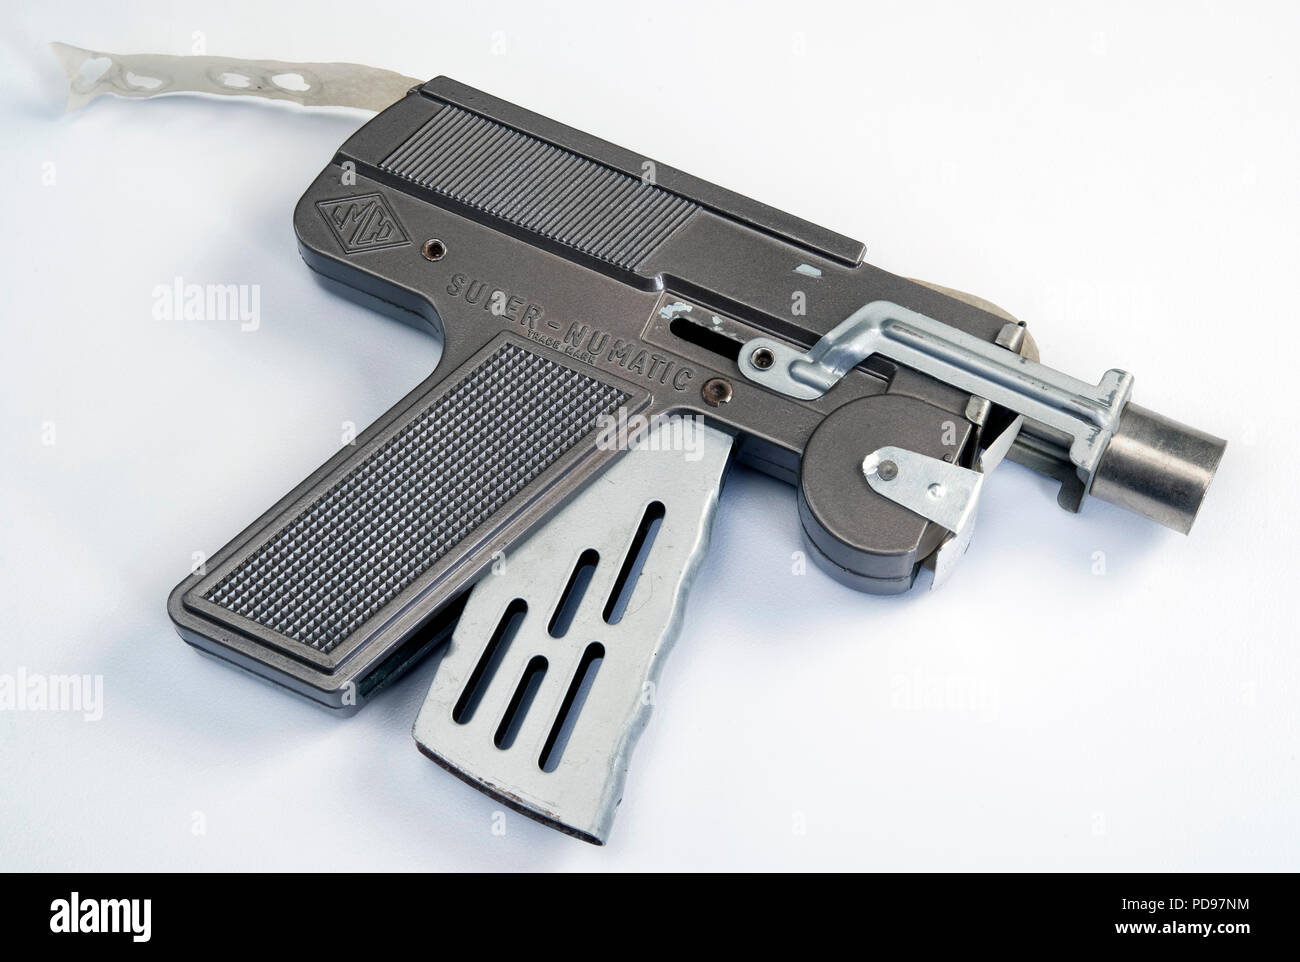 Dallas, Texas agosto 5-2018 Super Nu Matic pistola giocattolo cap realizzato negli anni cinquanta. Sembra un lazer ray gun per la corsa allo spazio. Foto Stock